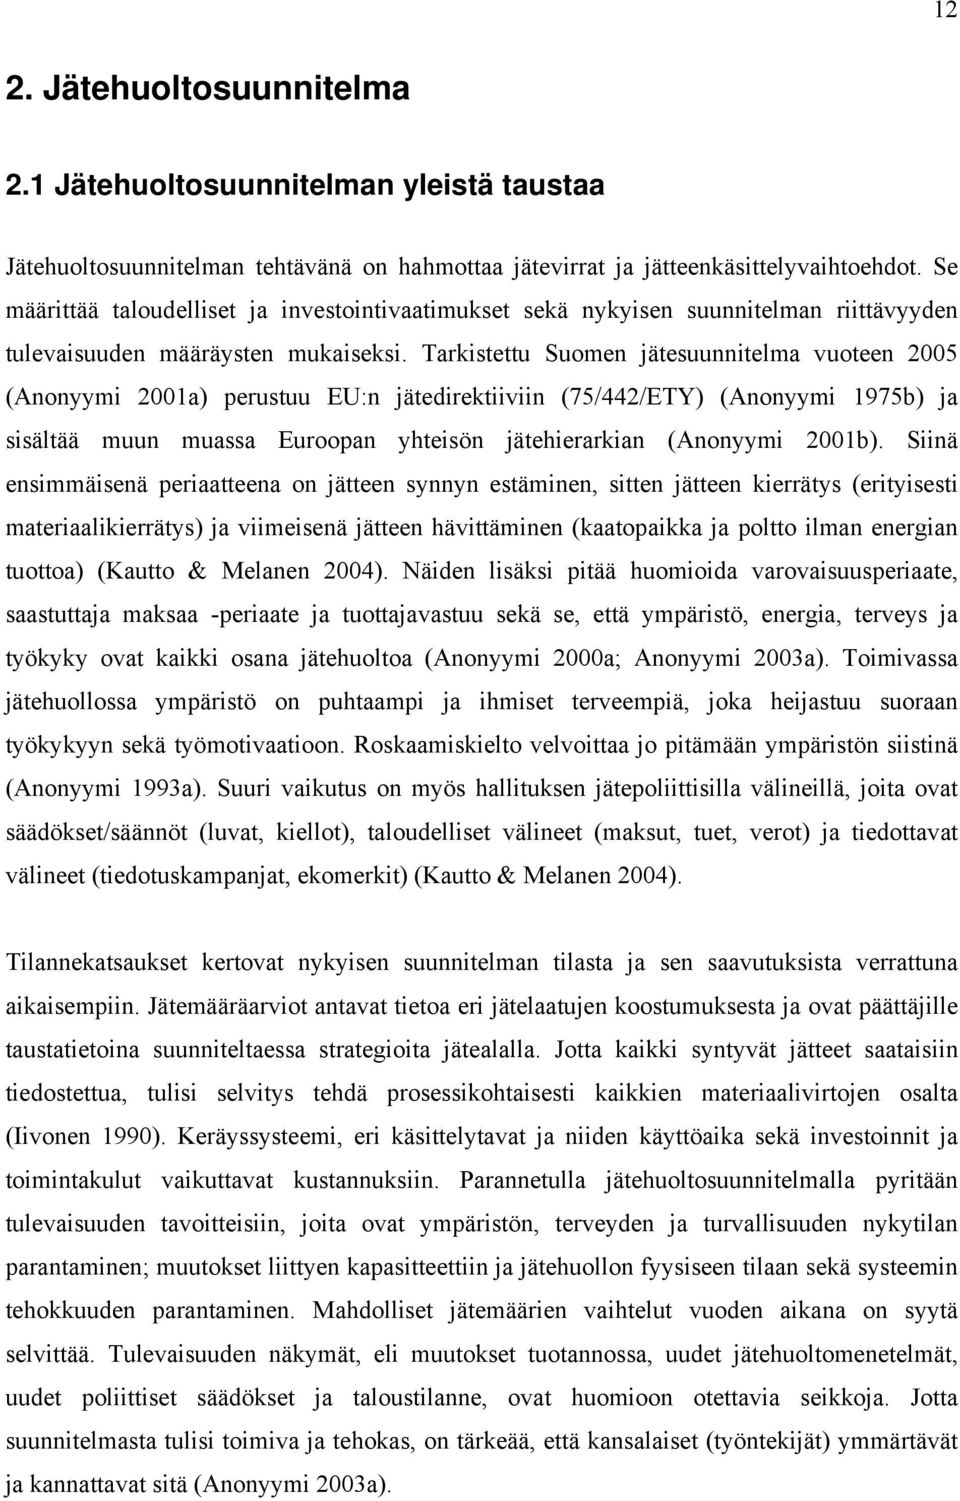 Tarkistettu Suomen jätesuunnitelma vuoteen 2005 (Anonyymi 2001a) perustuu EU:n jätedirektiiviin (75/442/ETY) (Anonyymi 1975b) ja sisältää muun muassa Euroopan yhteisön jätehierarkian (Anonyymi 2001b).